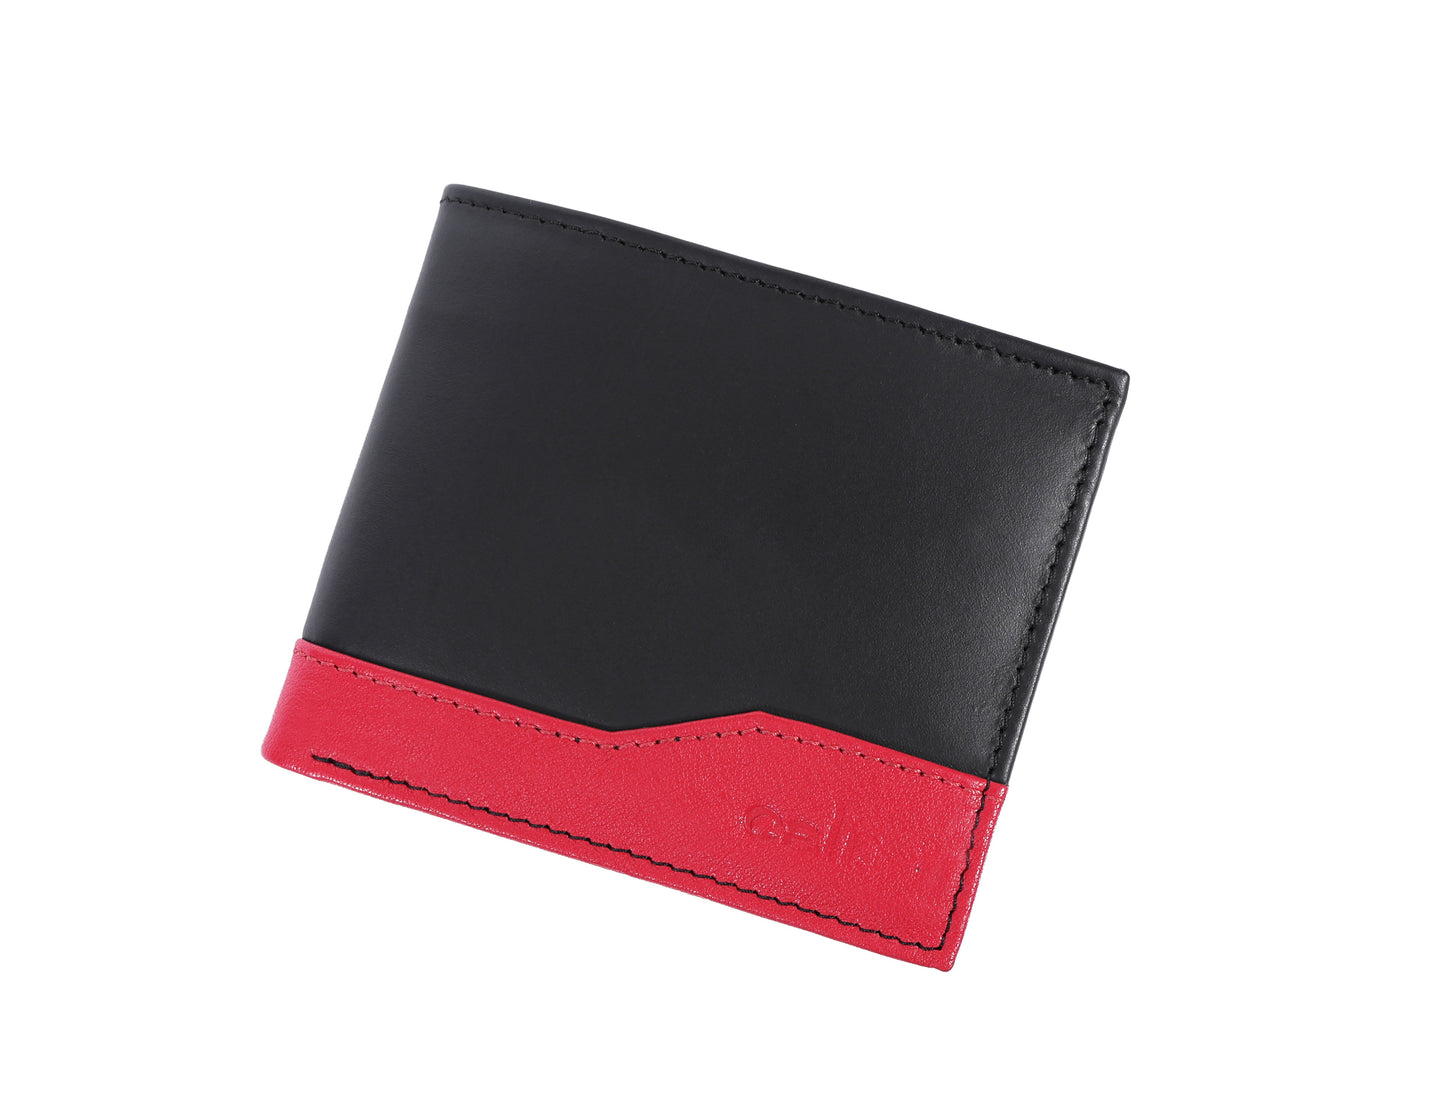 Designer Black Leather Wallet. - CELTICINDIA